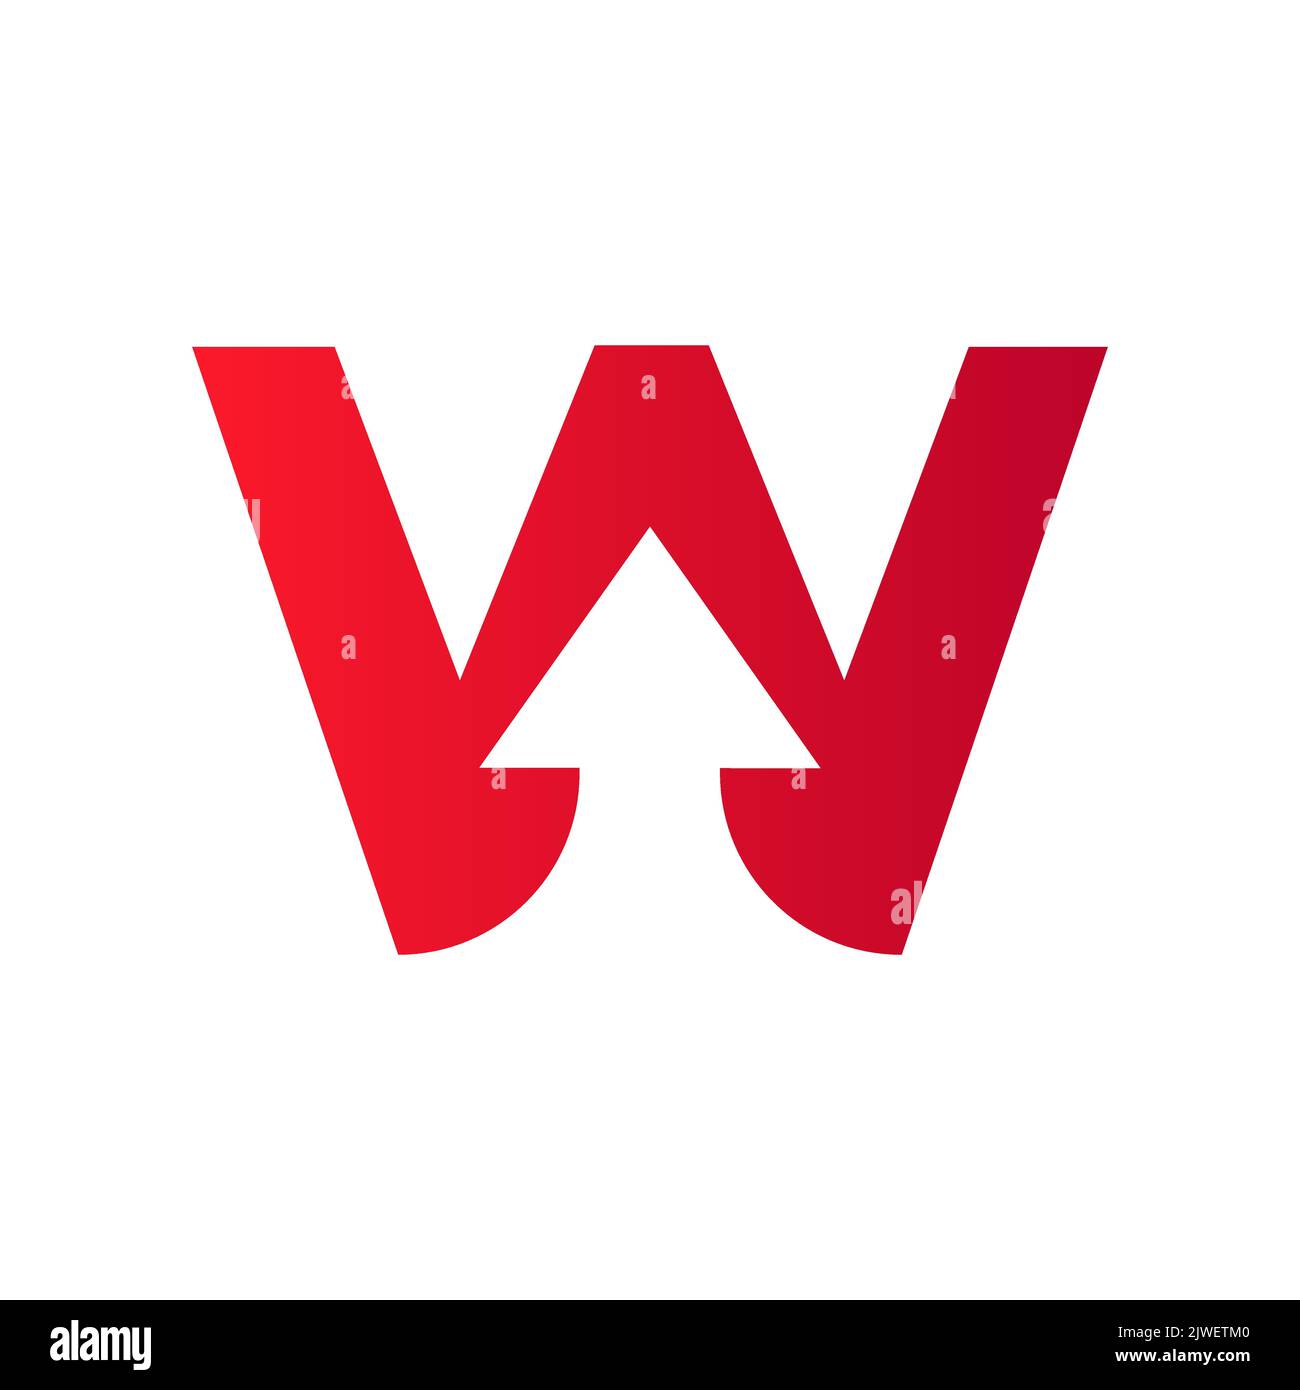 Logo financier lettre W avec flèche de croissance. Elément comptable, modèle de vecteur de symbole d'investissement financier Illustration de Vecteur